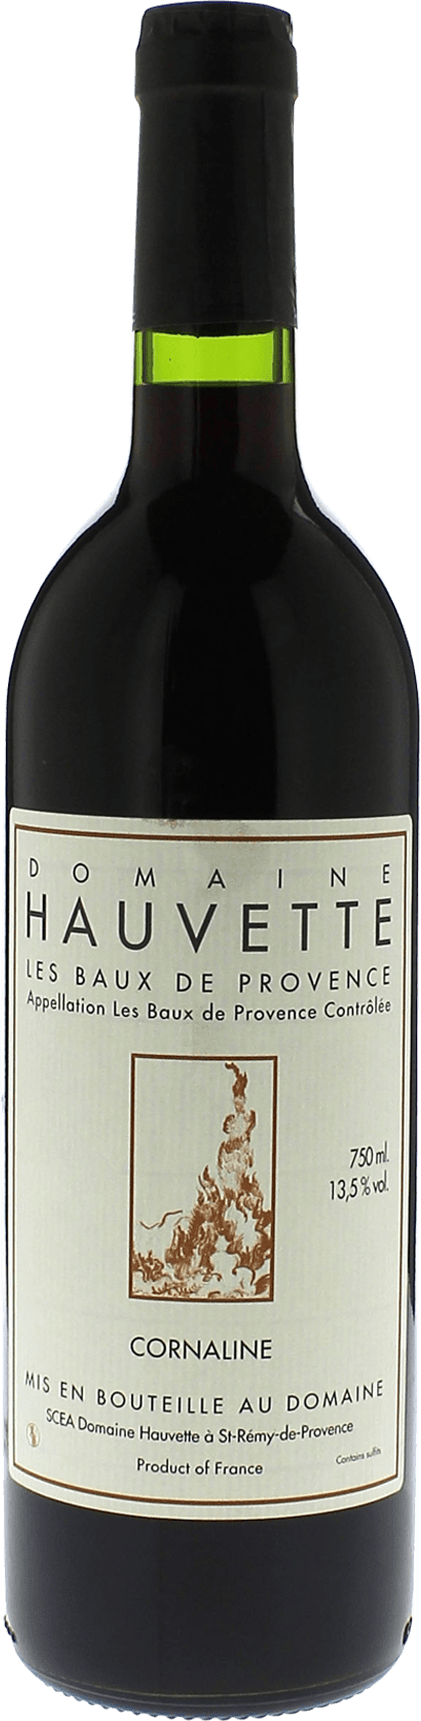 Domaine hauvette cornaline 2013  AOC Baux de Provence, Slection provence rouge